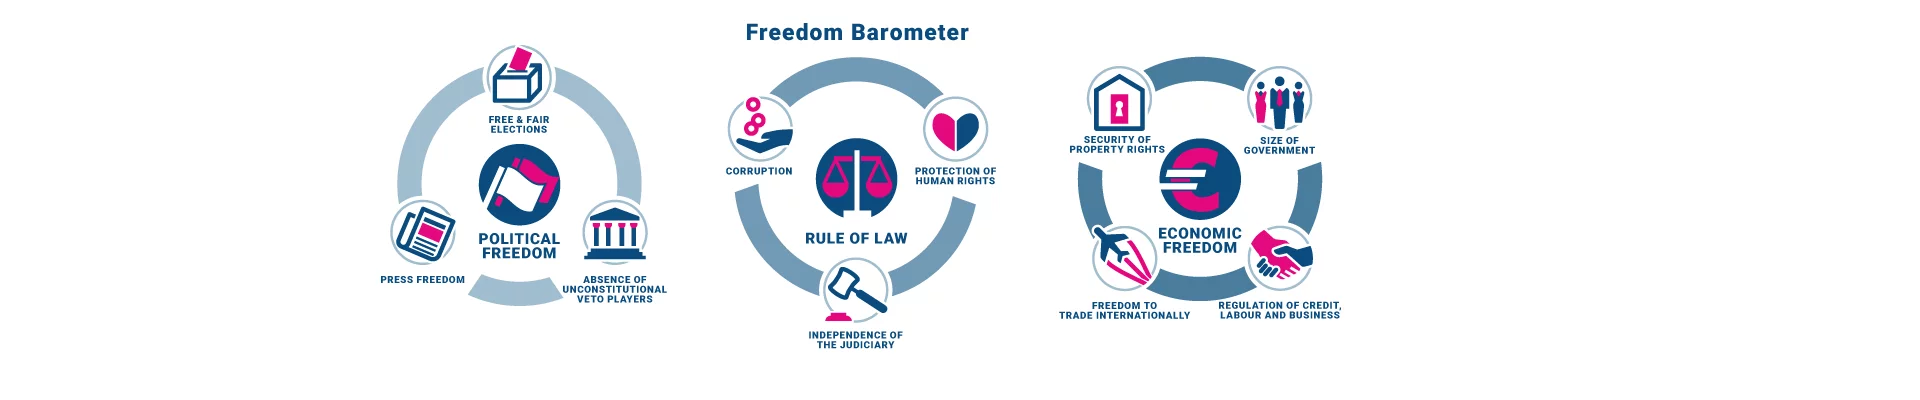 10 Years Freedom Barometer